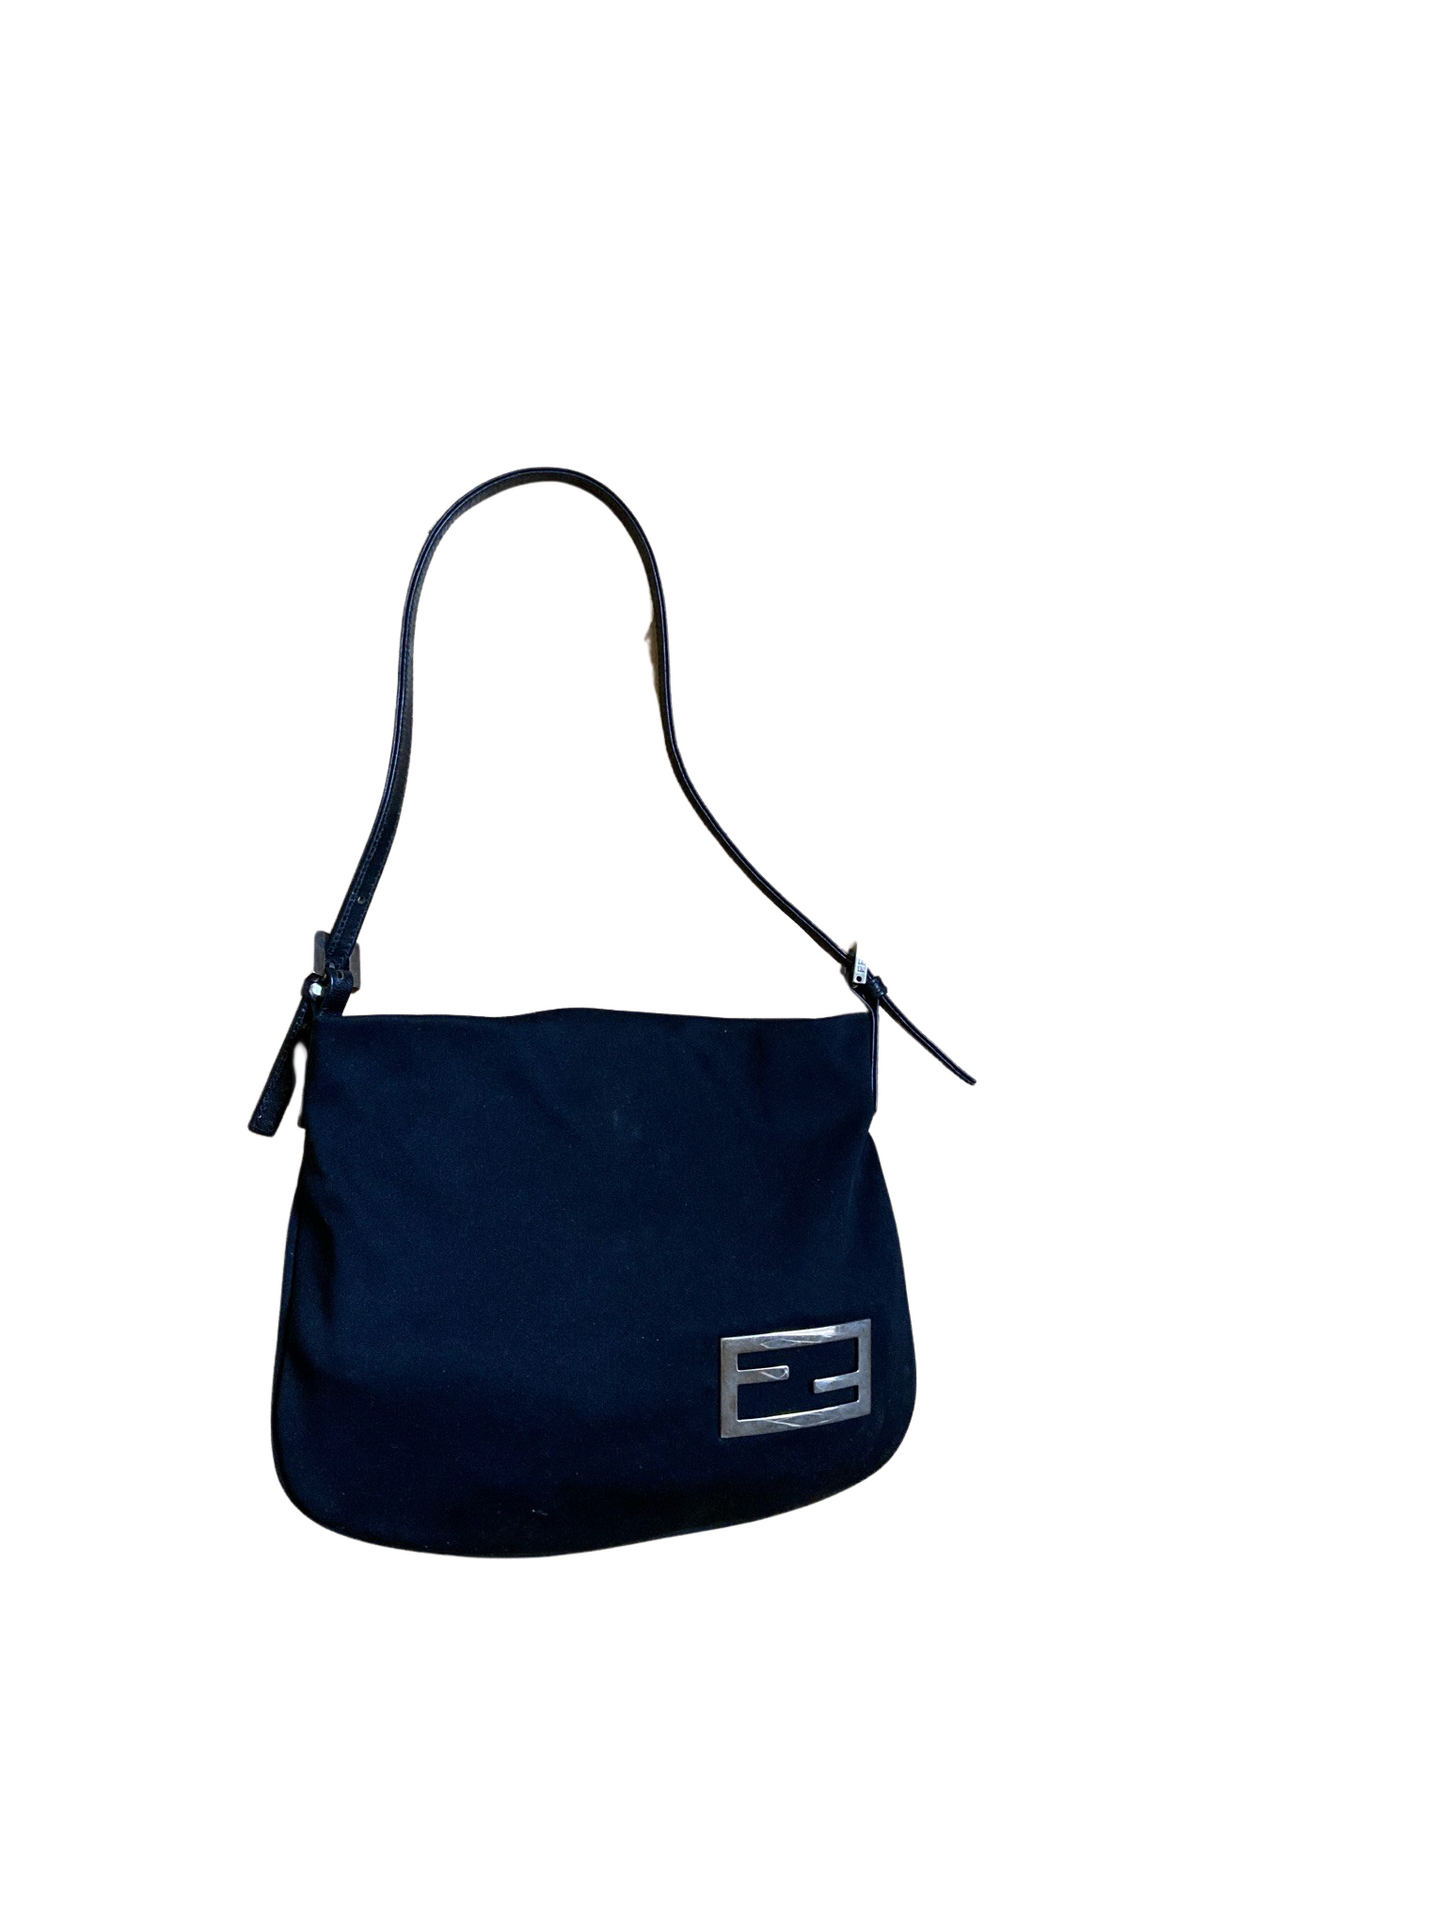 Fendi Black Fiber & Leather Shoulder Bag